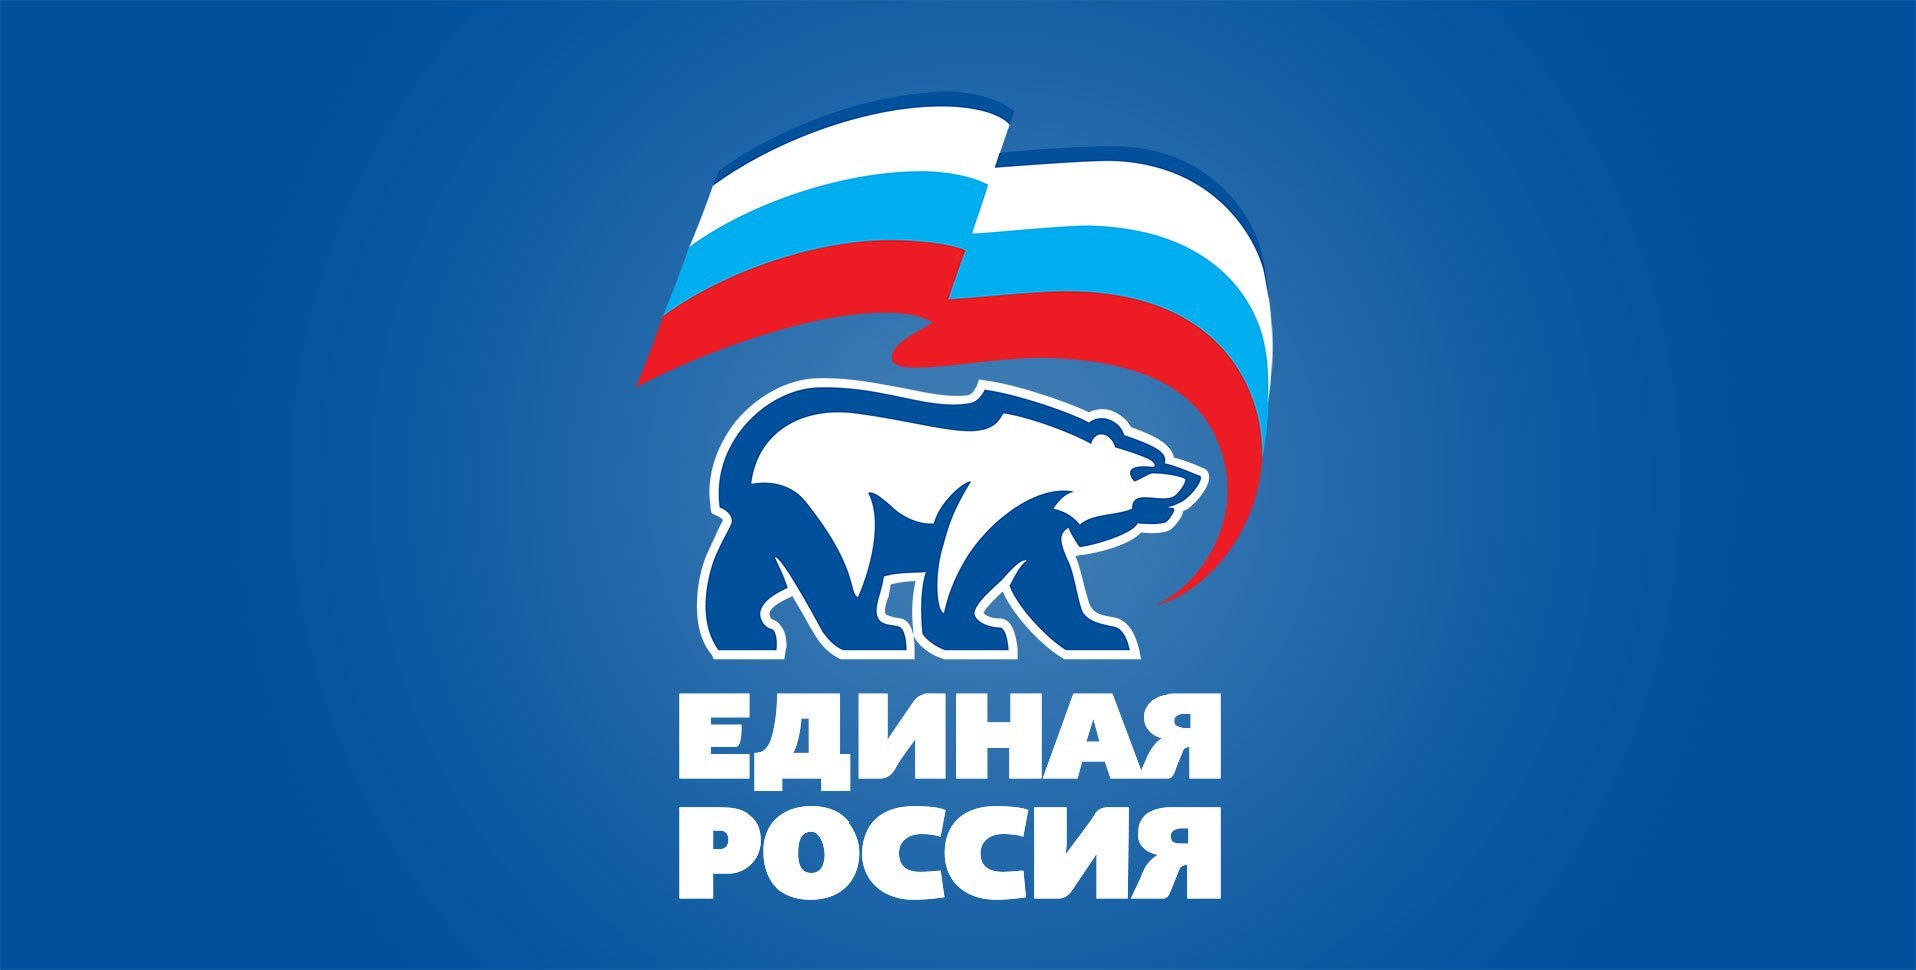 Единороссы представили Путину кандидатуры на должности глав КБР, Ингушетии и Крыма